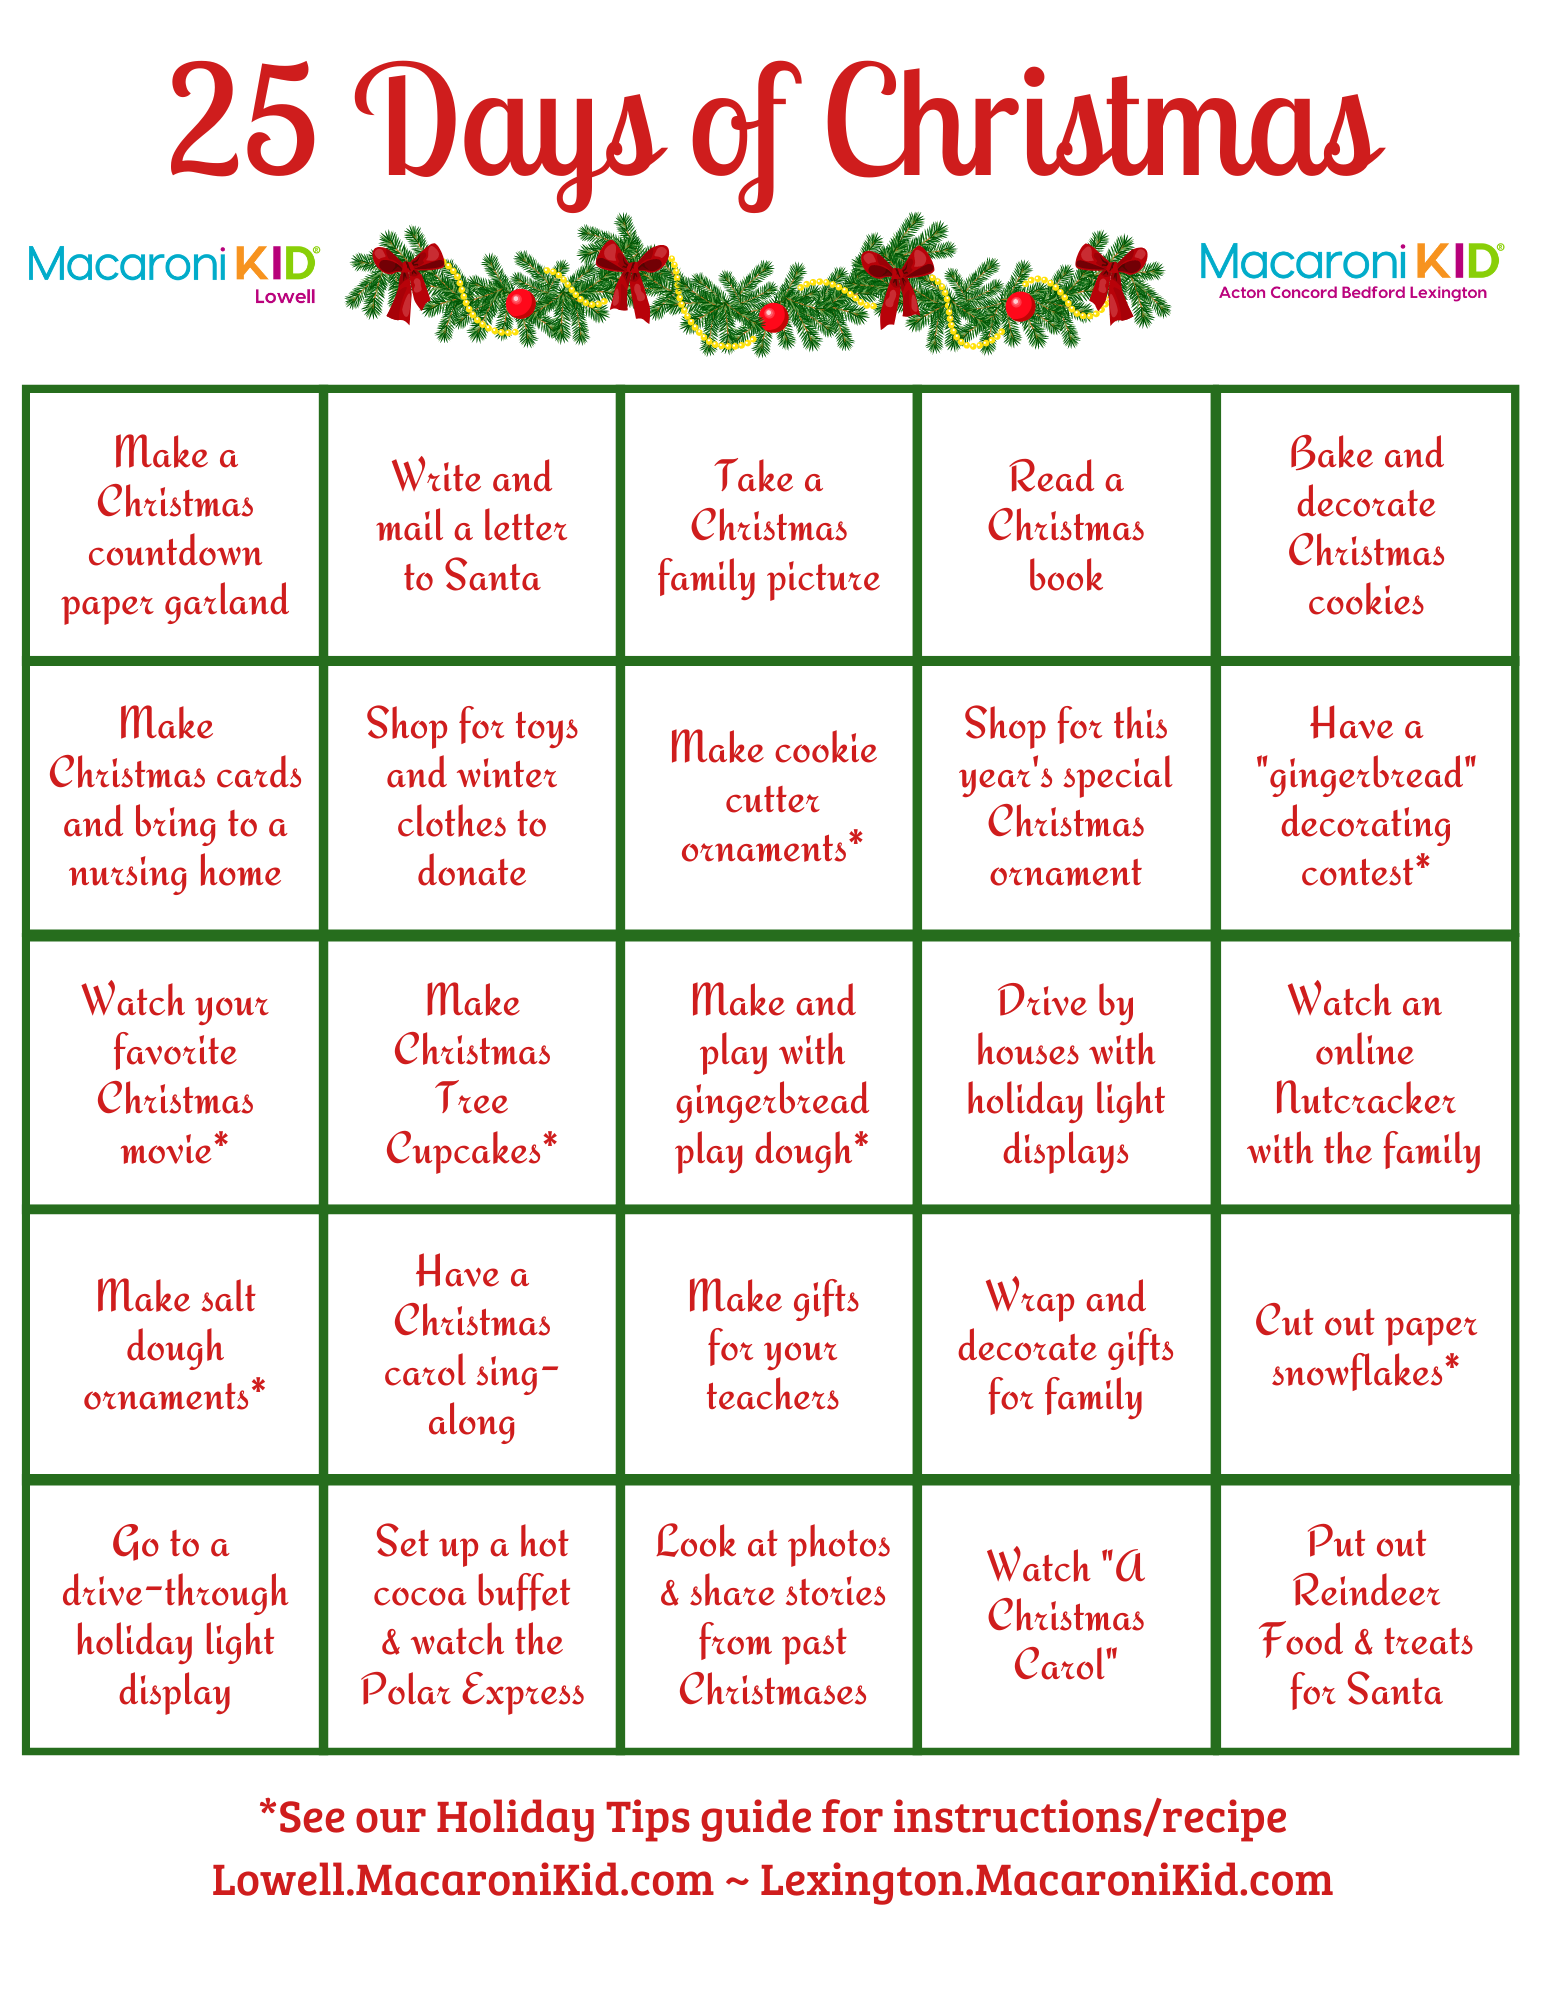 Free Printable: 25 Days of Christmas Family Activities | Macaroni KID ...